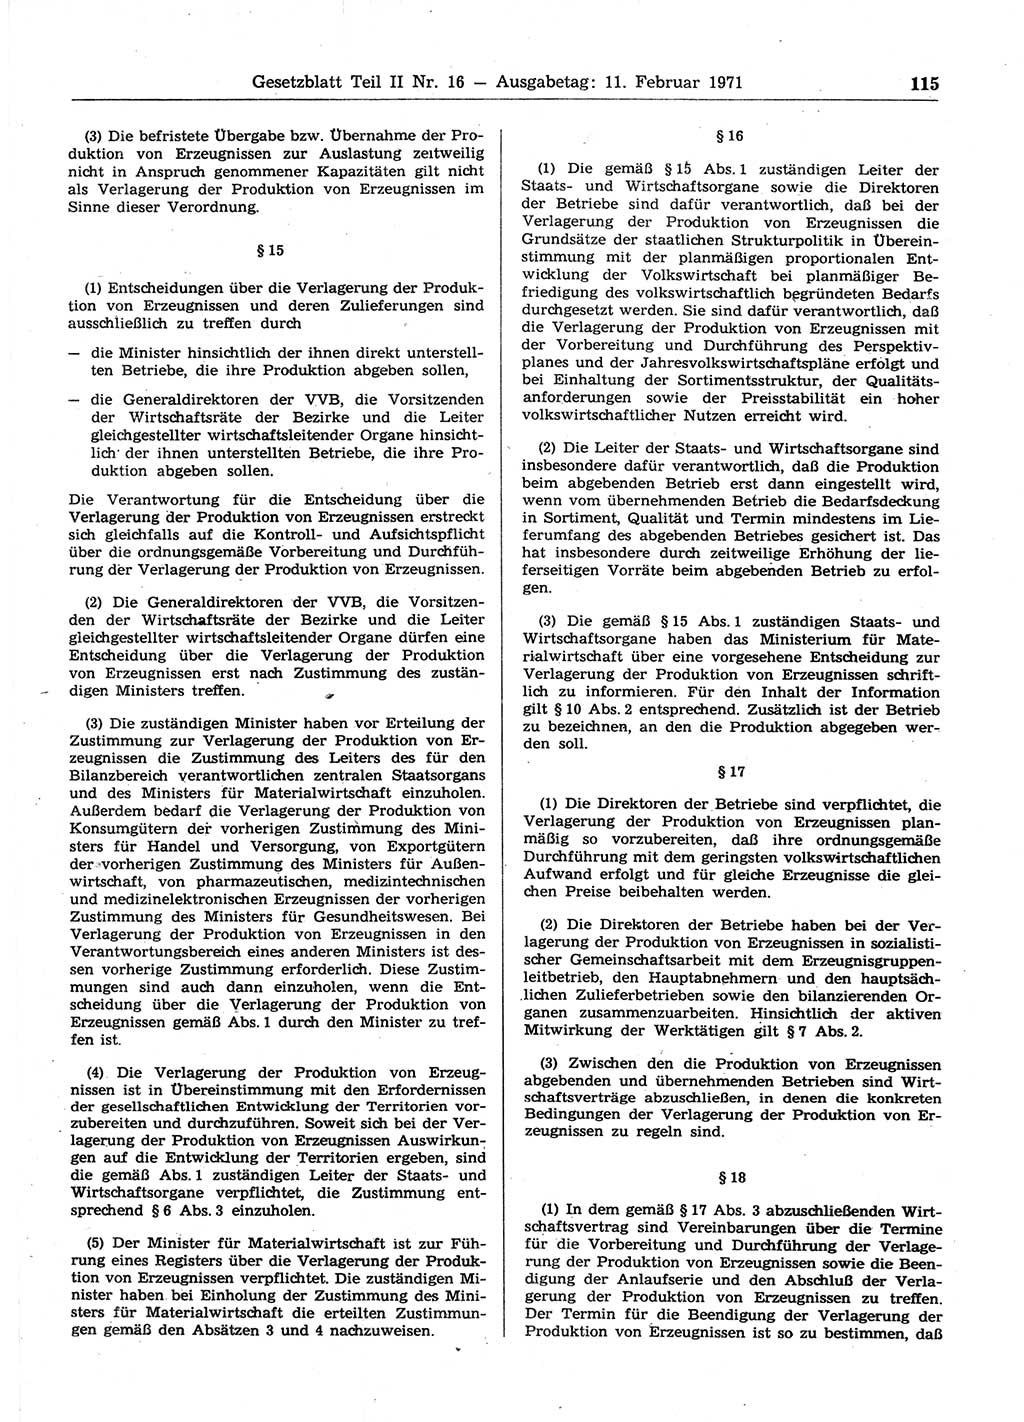 Gesetzblatt (GBl.) der Deutschen Demokratischen Republik (DDR) Teil ⅠⅠ 1971, Seite 115 (GBl. DDR ⅠⅠ 1971, S. 115)